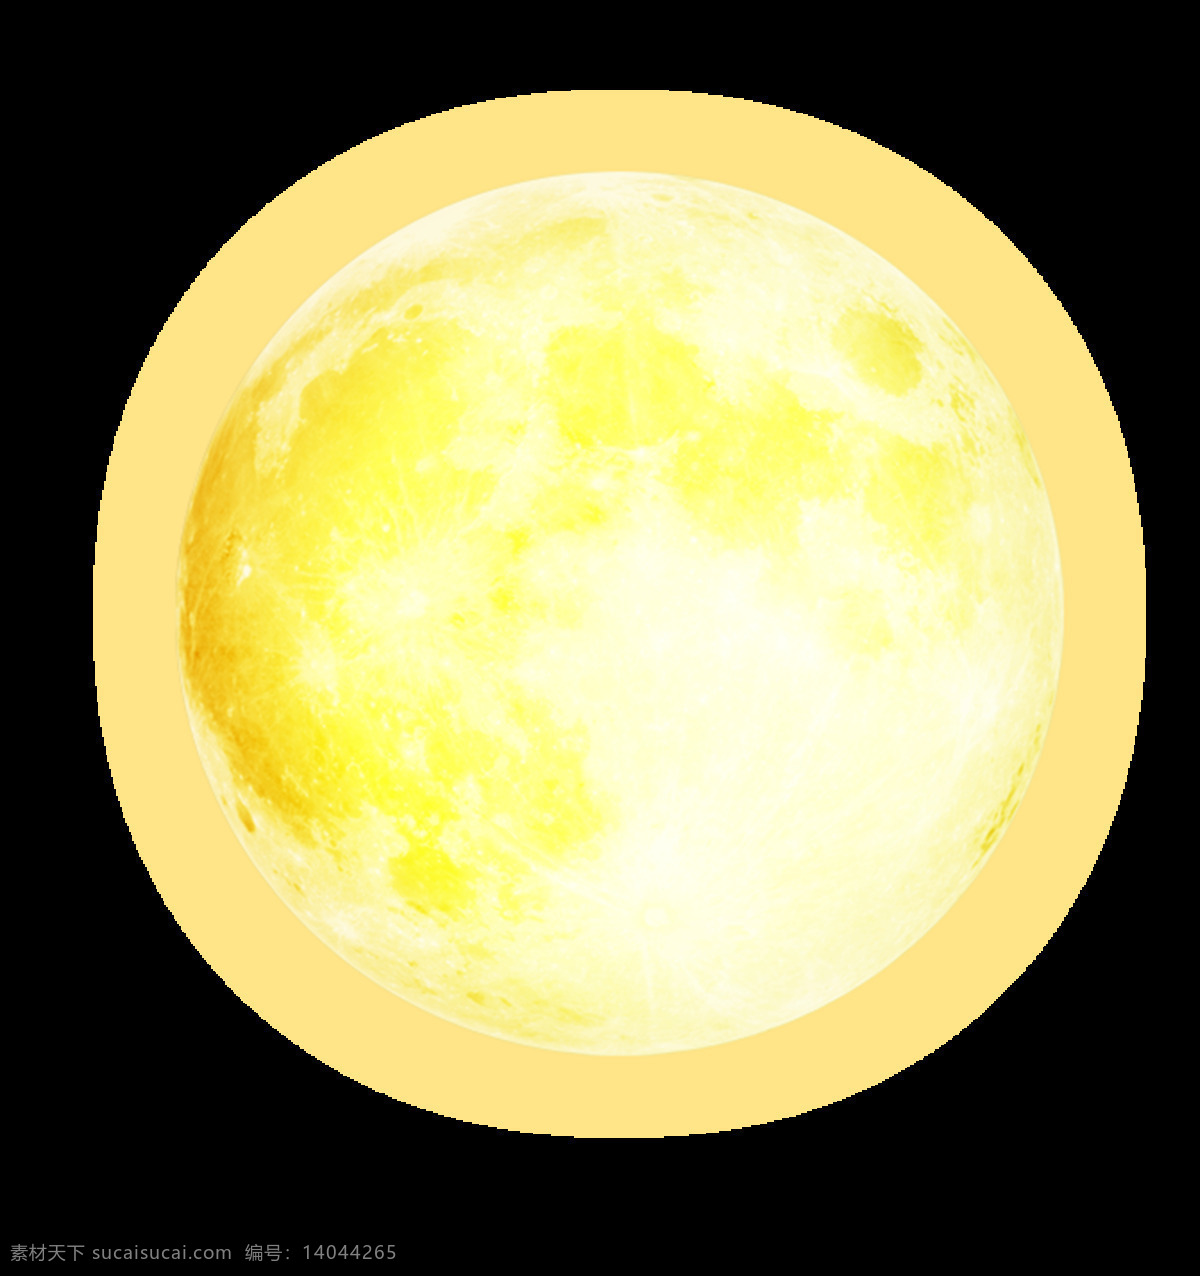 中秋月亮 月亮 圆月 月亮图片 月亮素材 月亮设计 元素